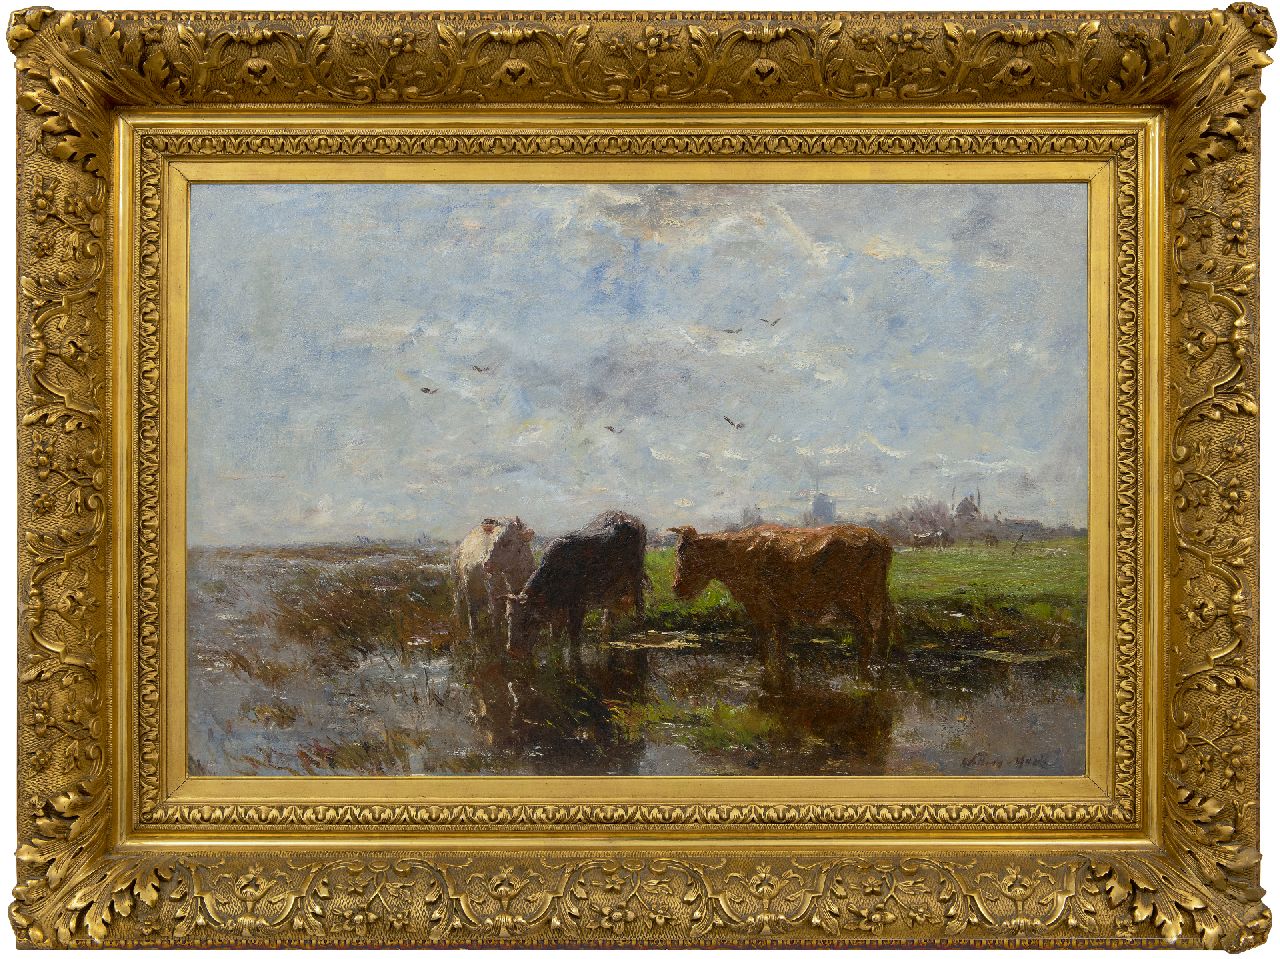 Maris W.  | Willem Maris | Schilderijen te koop aangeboden | Drinkende koeien in een polderlandschap, olieverf op doek 58,2 x 85,2 cm, gesigneerd rechtsonder